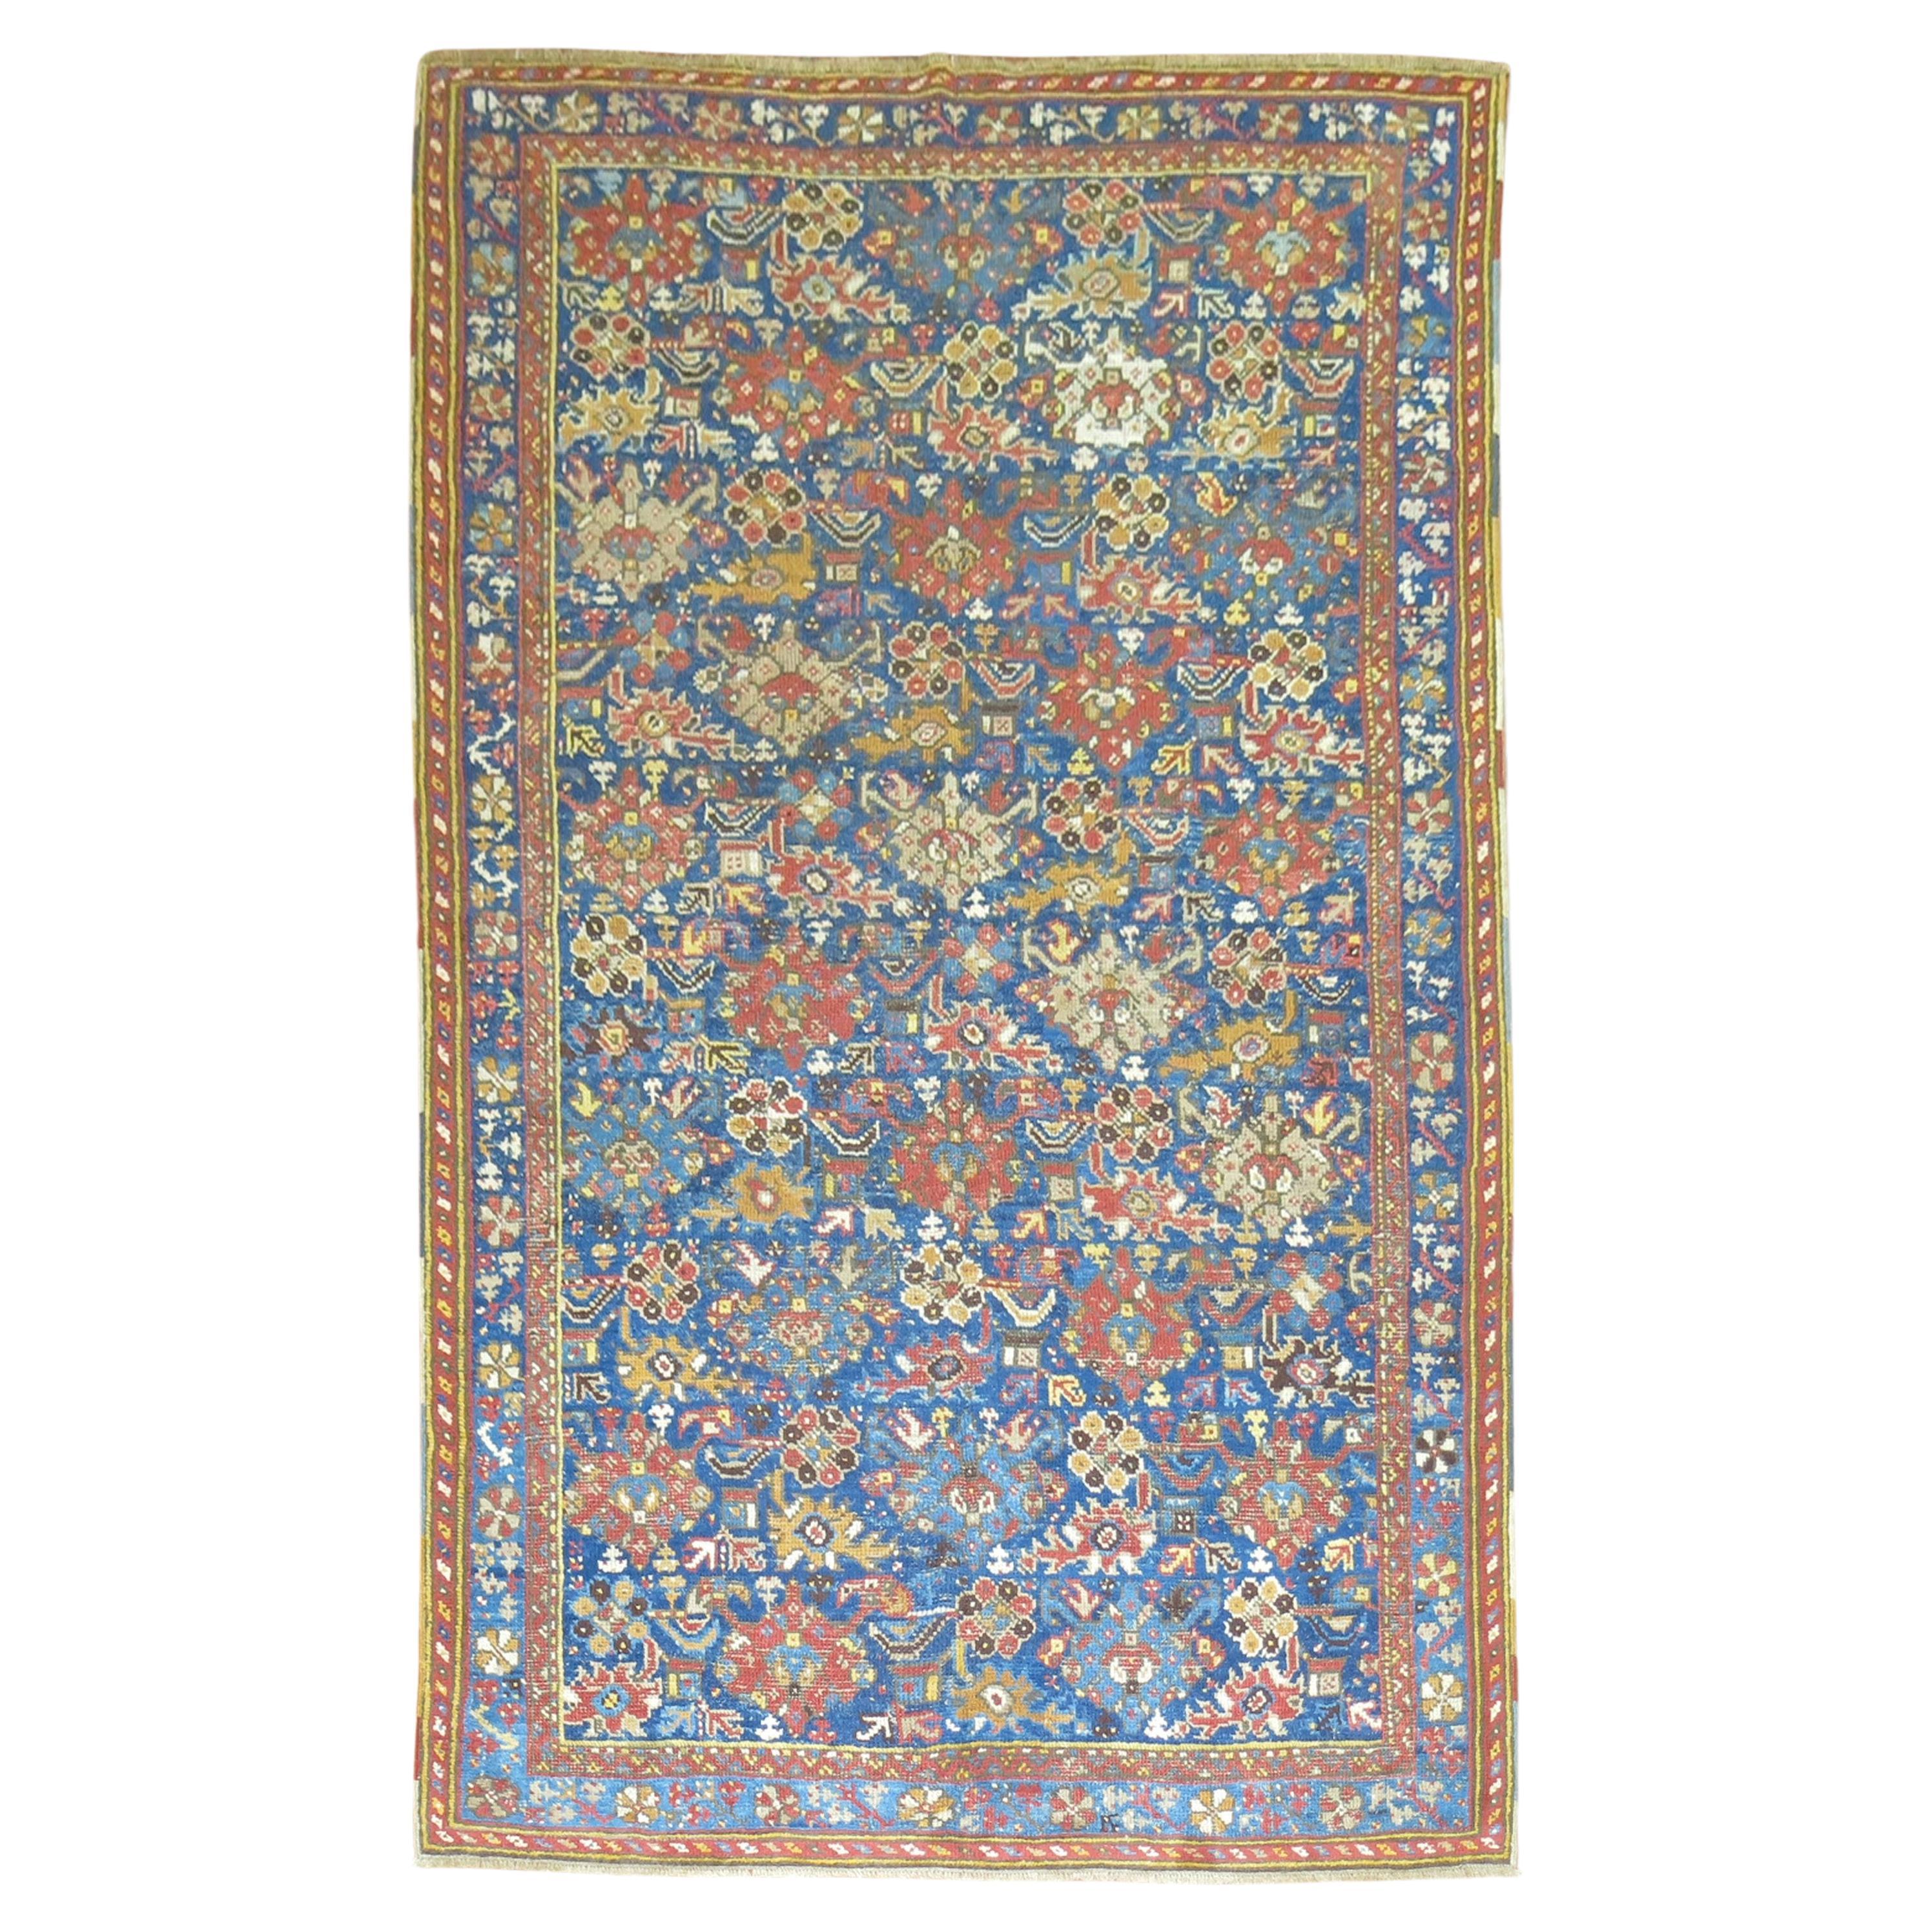 Antiker blauer Oushak-Teppich aus der Zabihi-Kollektion des 19. Jahrhunderts